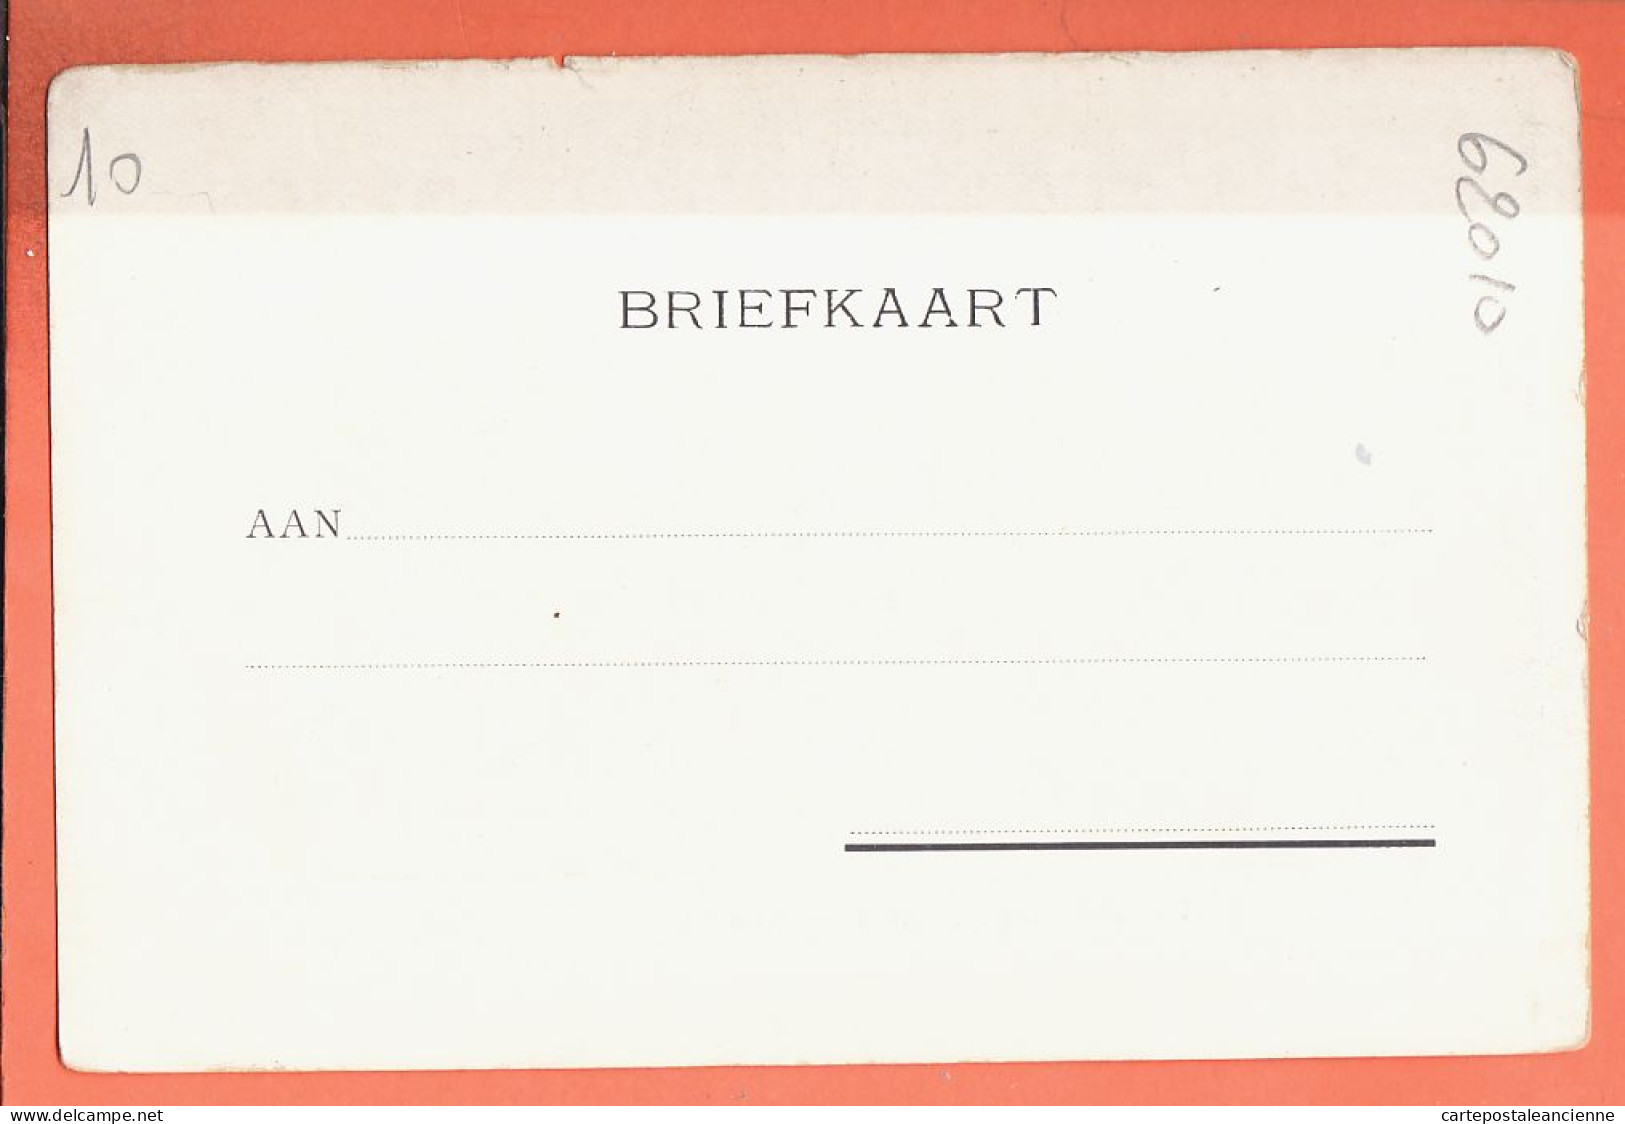 36528 / ⭐ Rare LEIDEN Zuid-Holland Universiteits-Bibliotheek Bibliothèque-Universitaire 1900s Nederland Uit. GOEDELJEE - Leiden